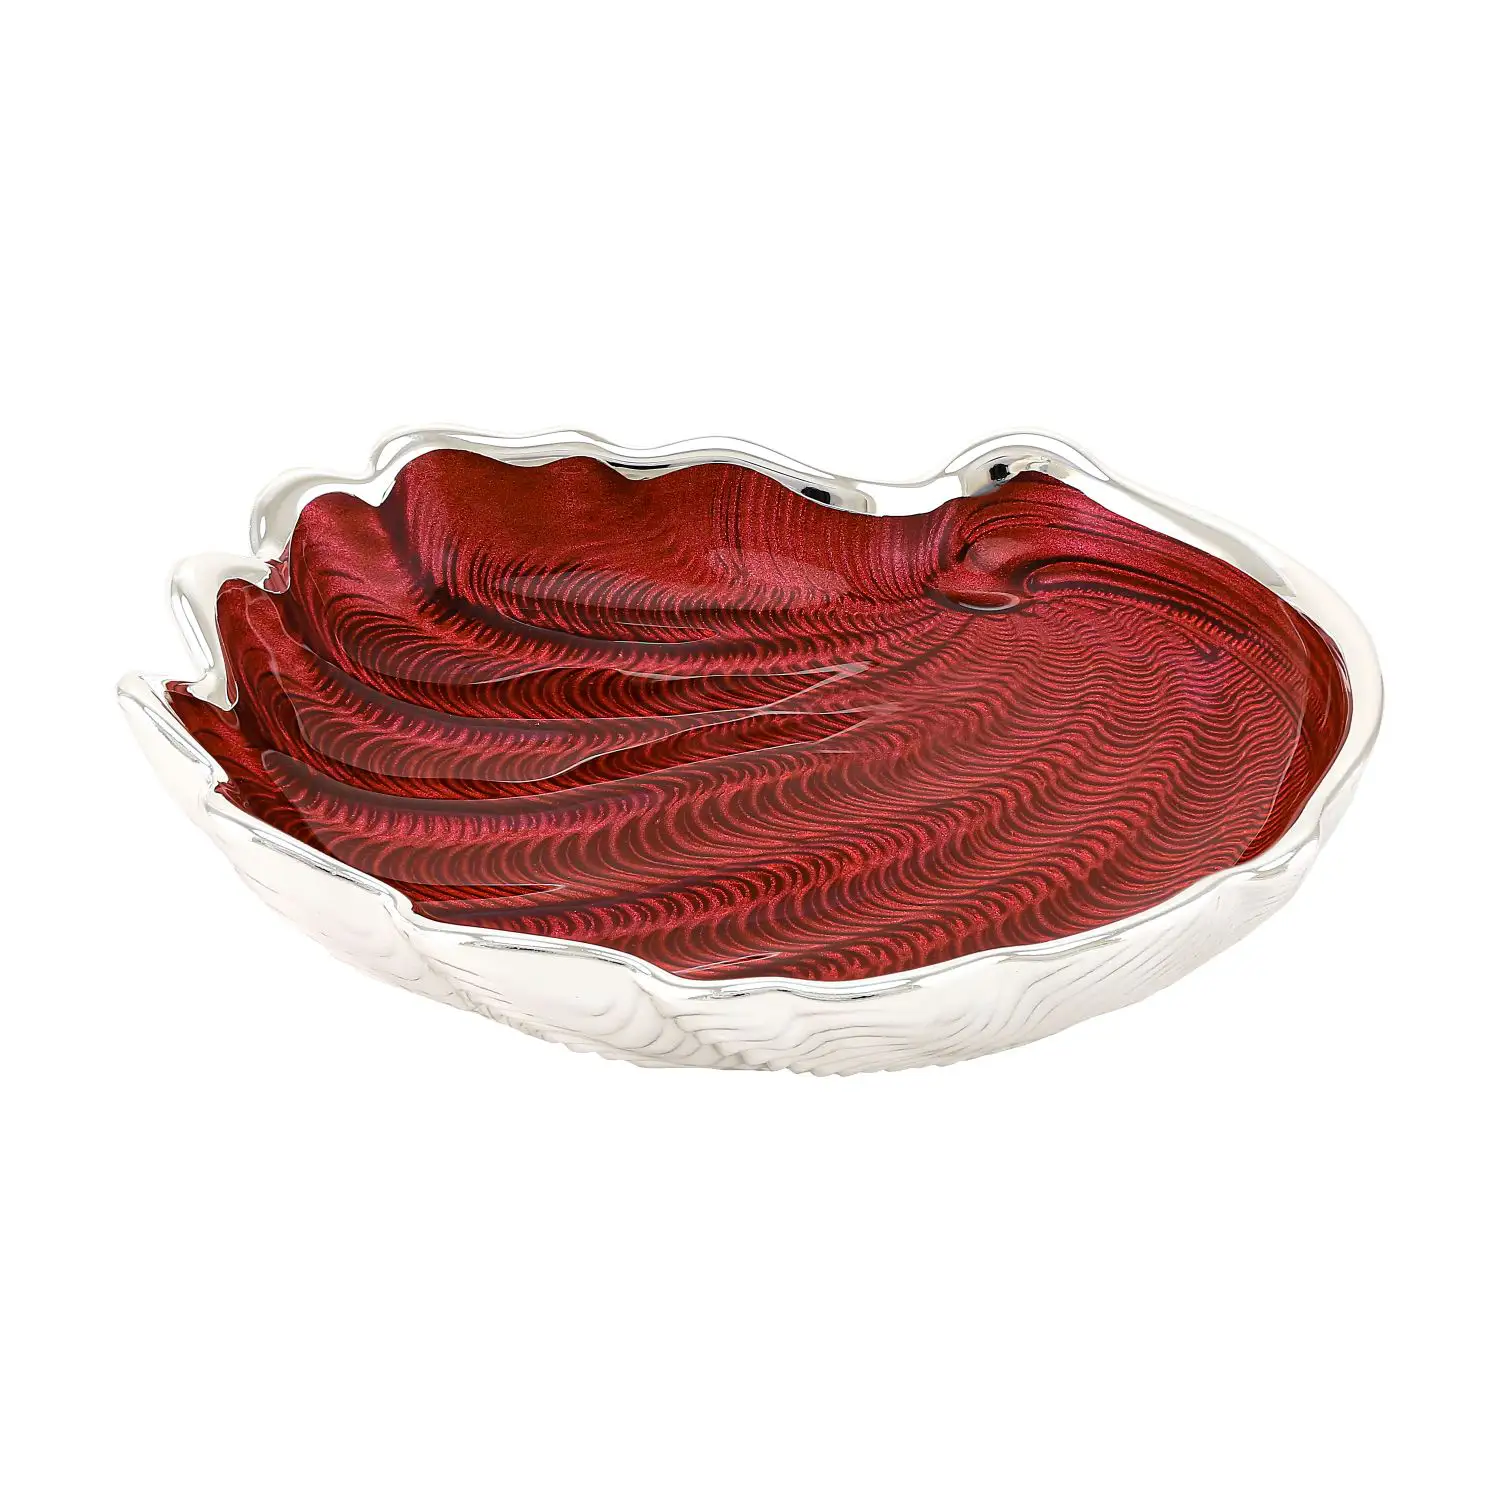 Тарелка стеклянная CONCHIGLIA (цвет красный) диаметр 15 см тарелка стеклянная conchiglia цвет небесно голубой диаметр 15 см